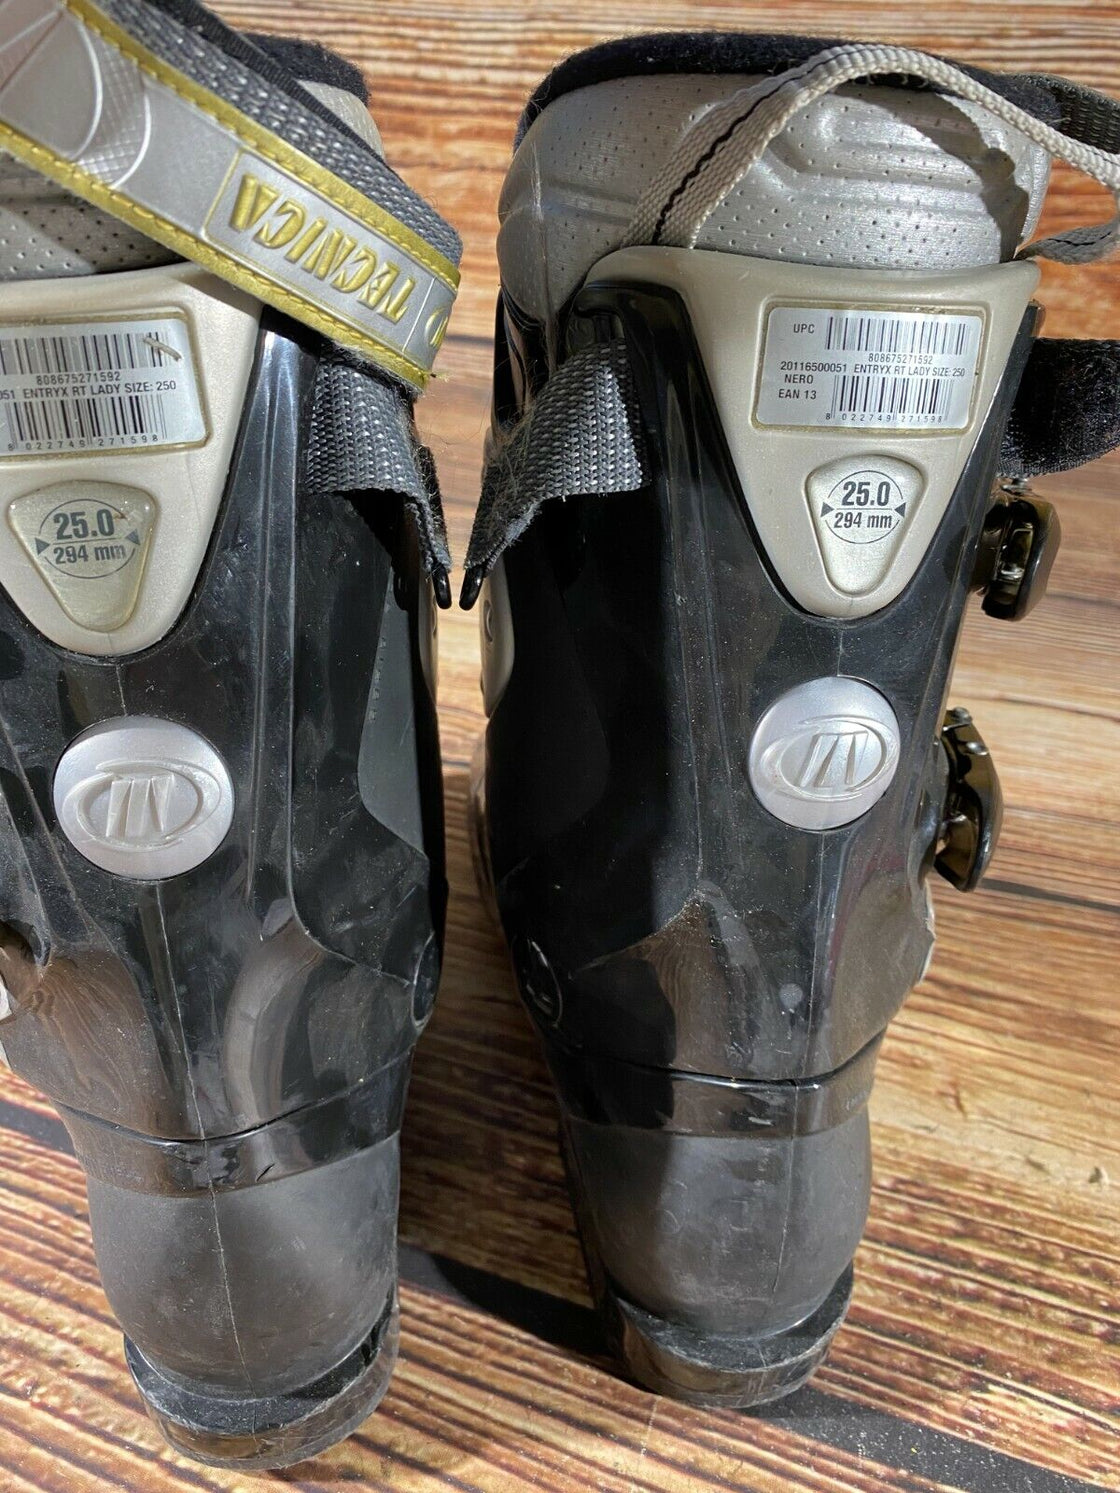 TECNICA Alpine Ski Boots Size Mondo 250 - 255 mm, Outer Sole 294 mm DH186